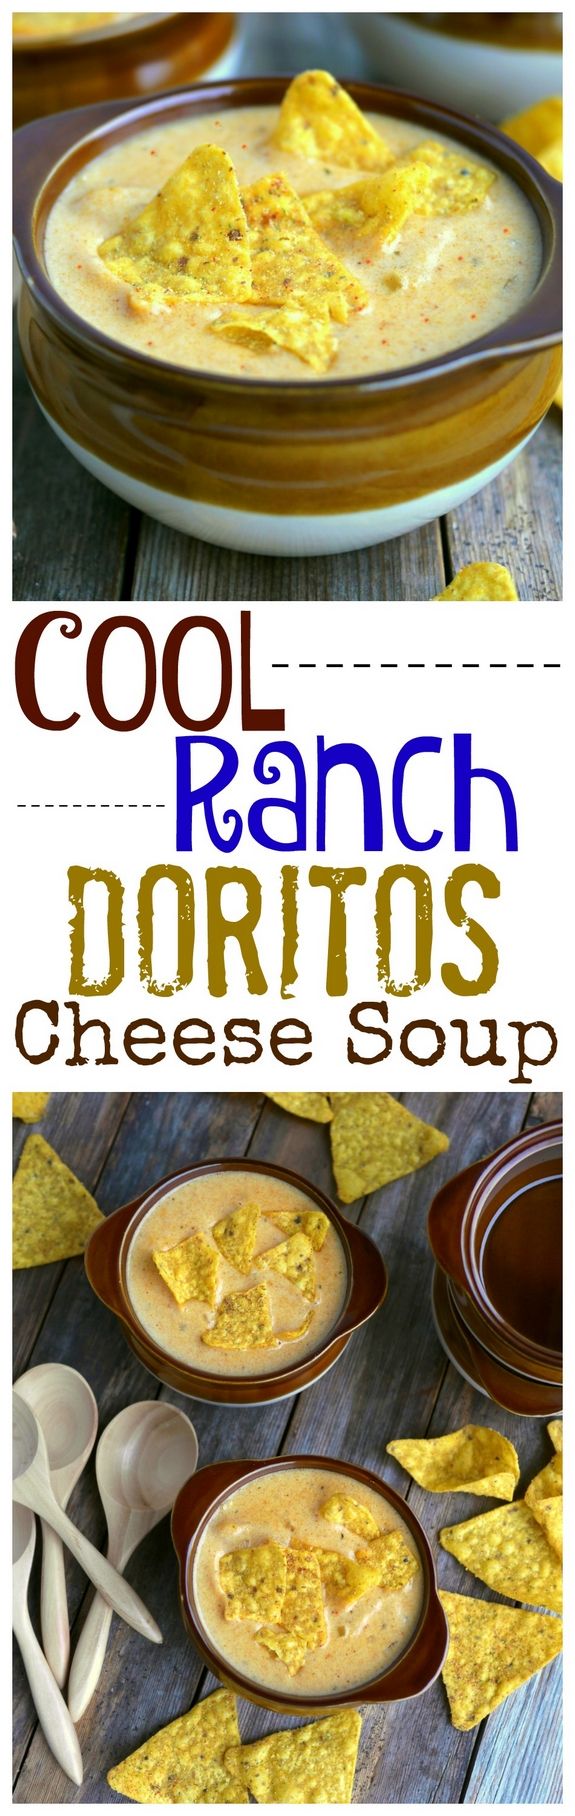 Cool Ranch Doritos Cheese Soup